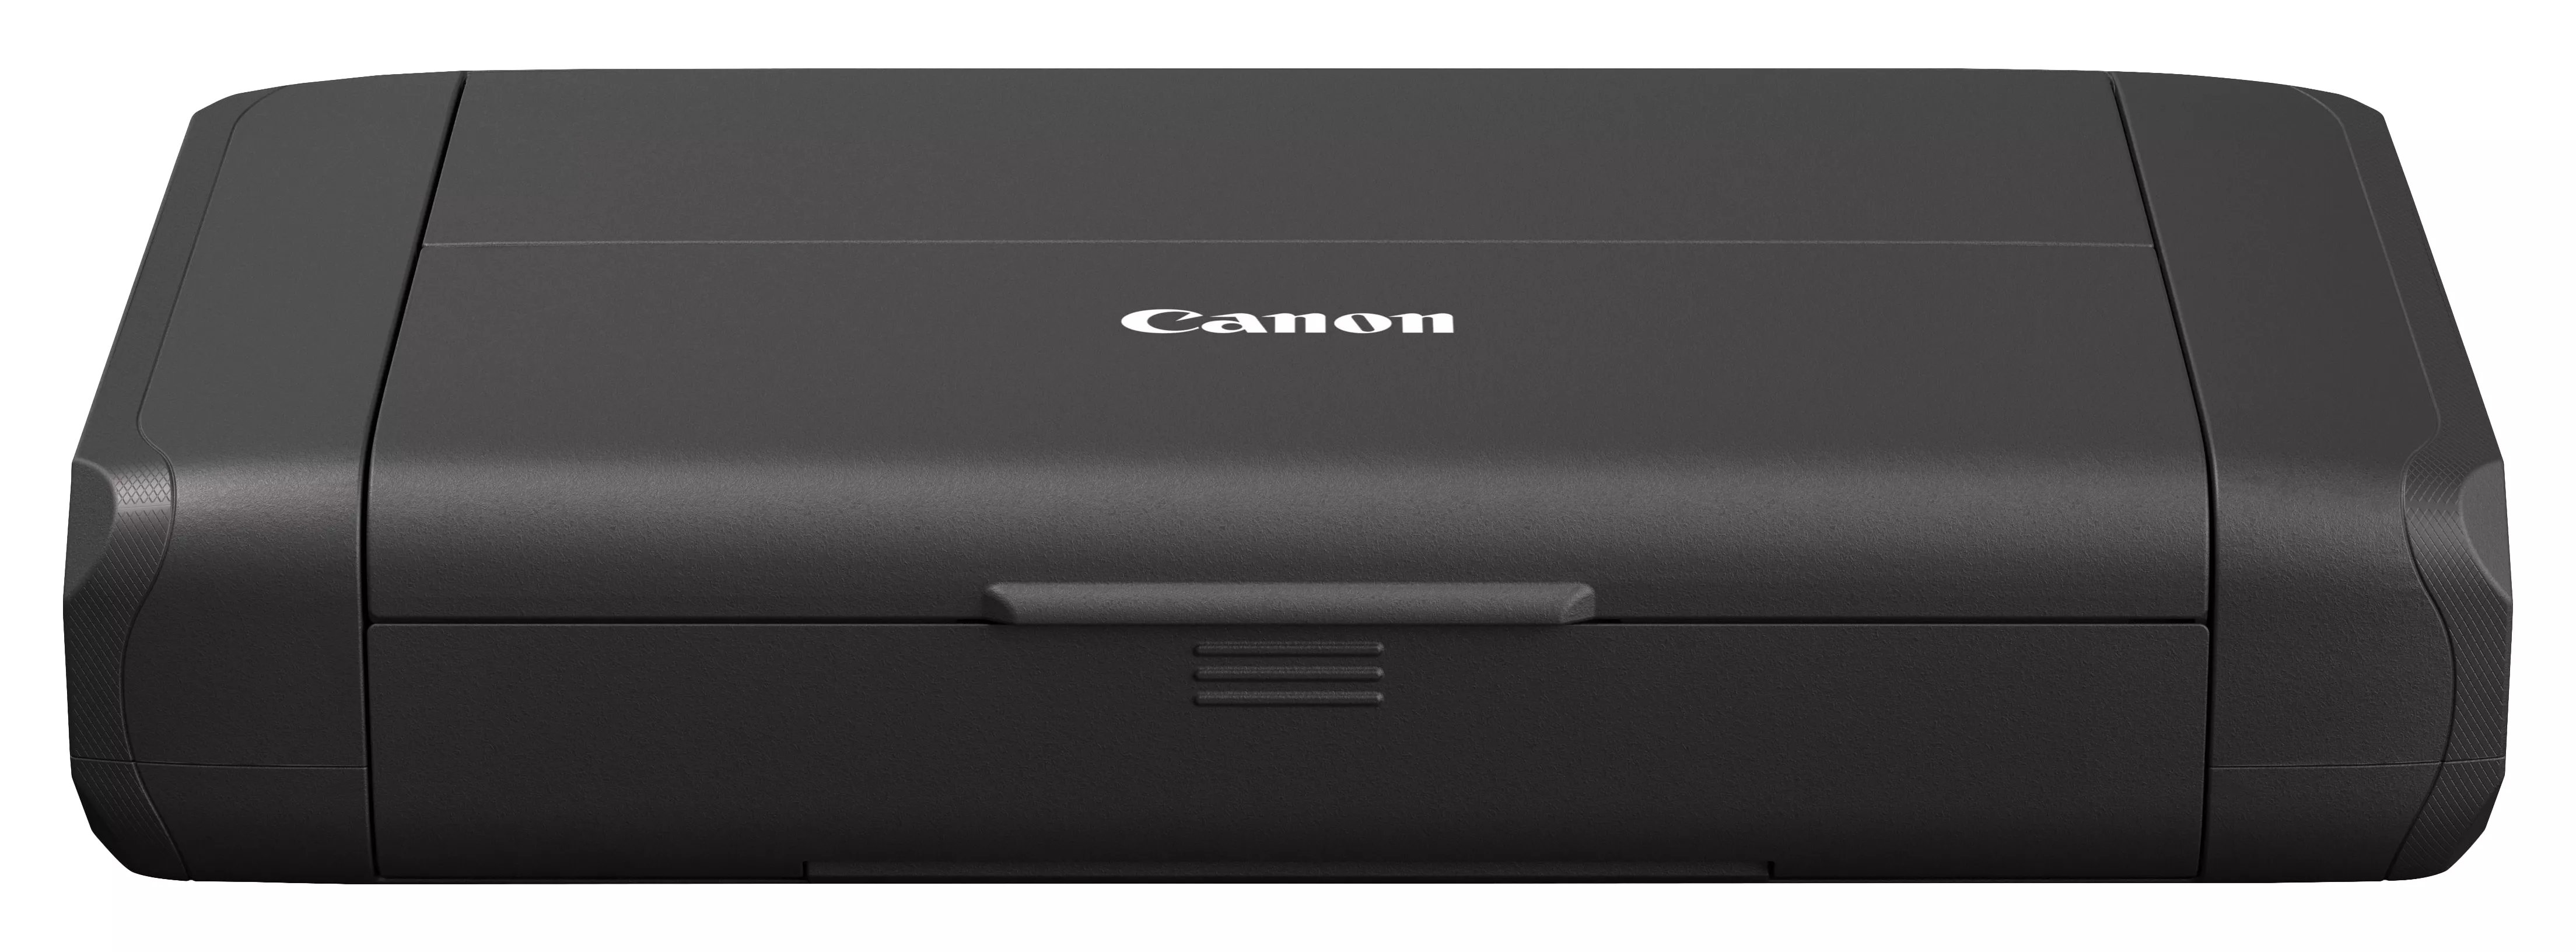 Achat CANON PIXMA TR150 Printer colour ink-jet A4 9 ipm mono/5 et autres produits de la marque Canon